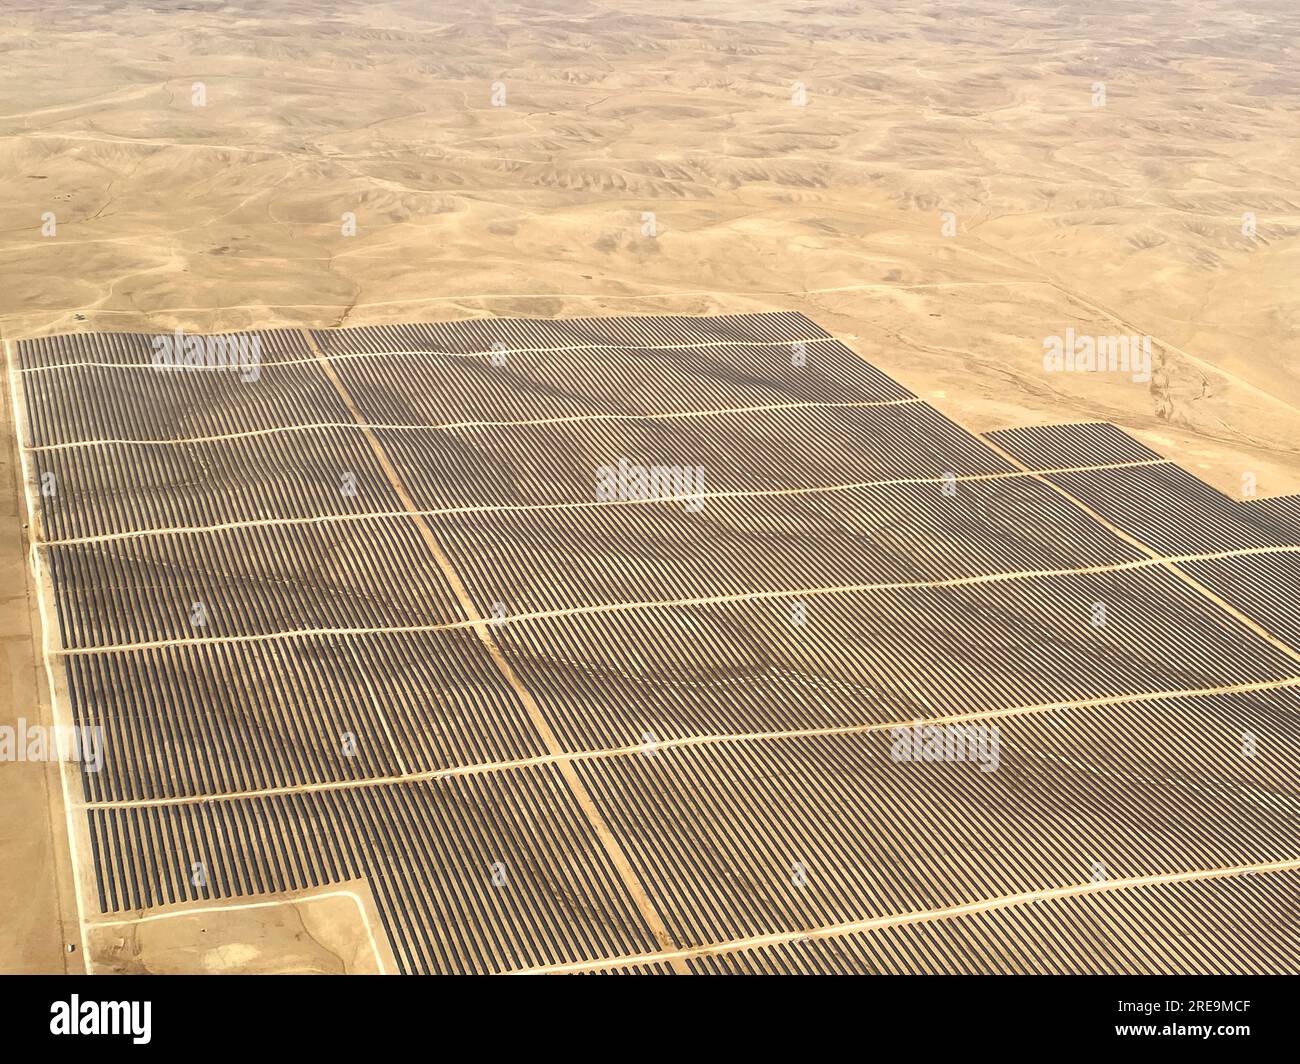 Un sistema energetico molto grande nel deserto per produrre elettricità Foto Stock